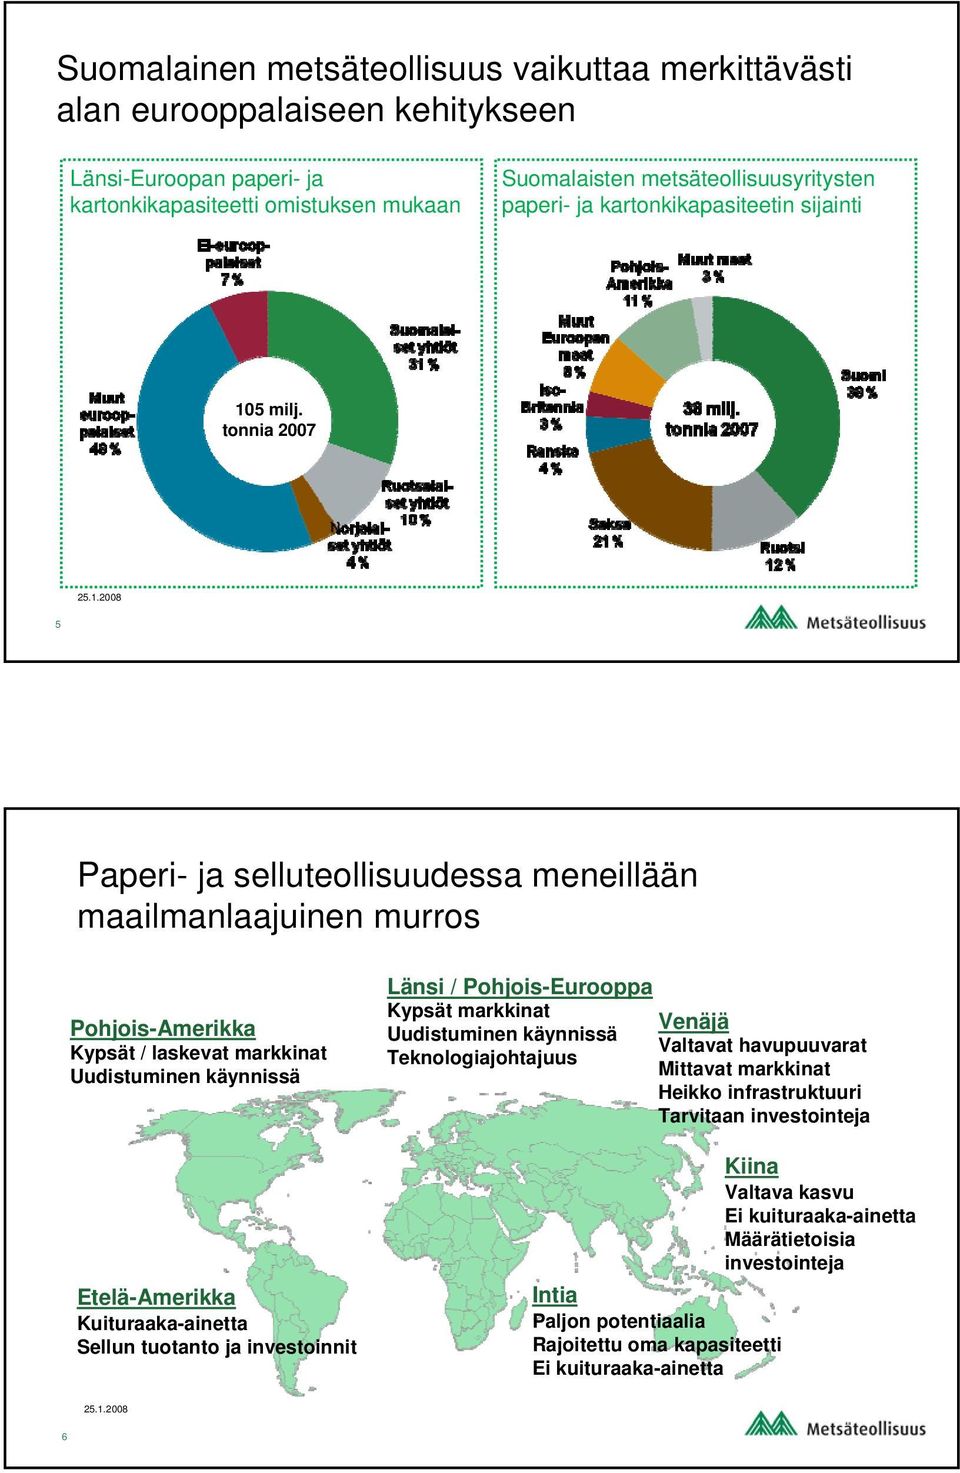 tonnia 2007 5 Paperi- ja selluteollisuudessa meneillään maailmanlaajuinen murros Pohjois-Amerikka Kypsät / laskevat markkinat Uudistuminen käynnissä Etelä-Amerikka Kuituraaka-ainetta Sellun